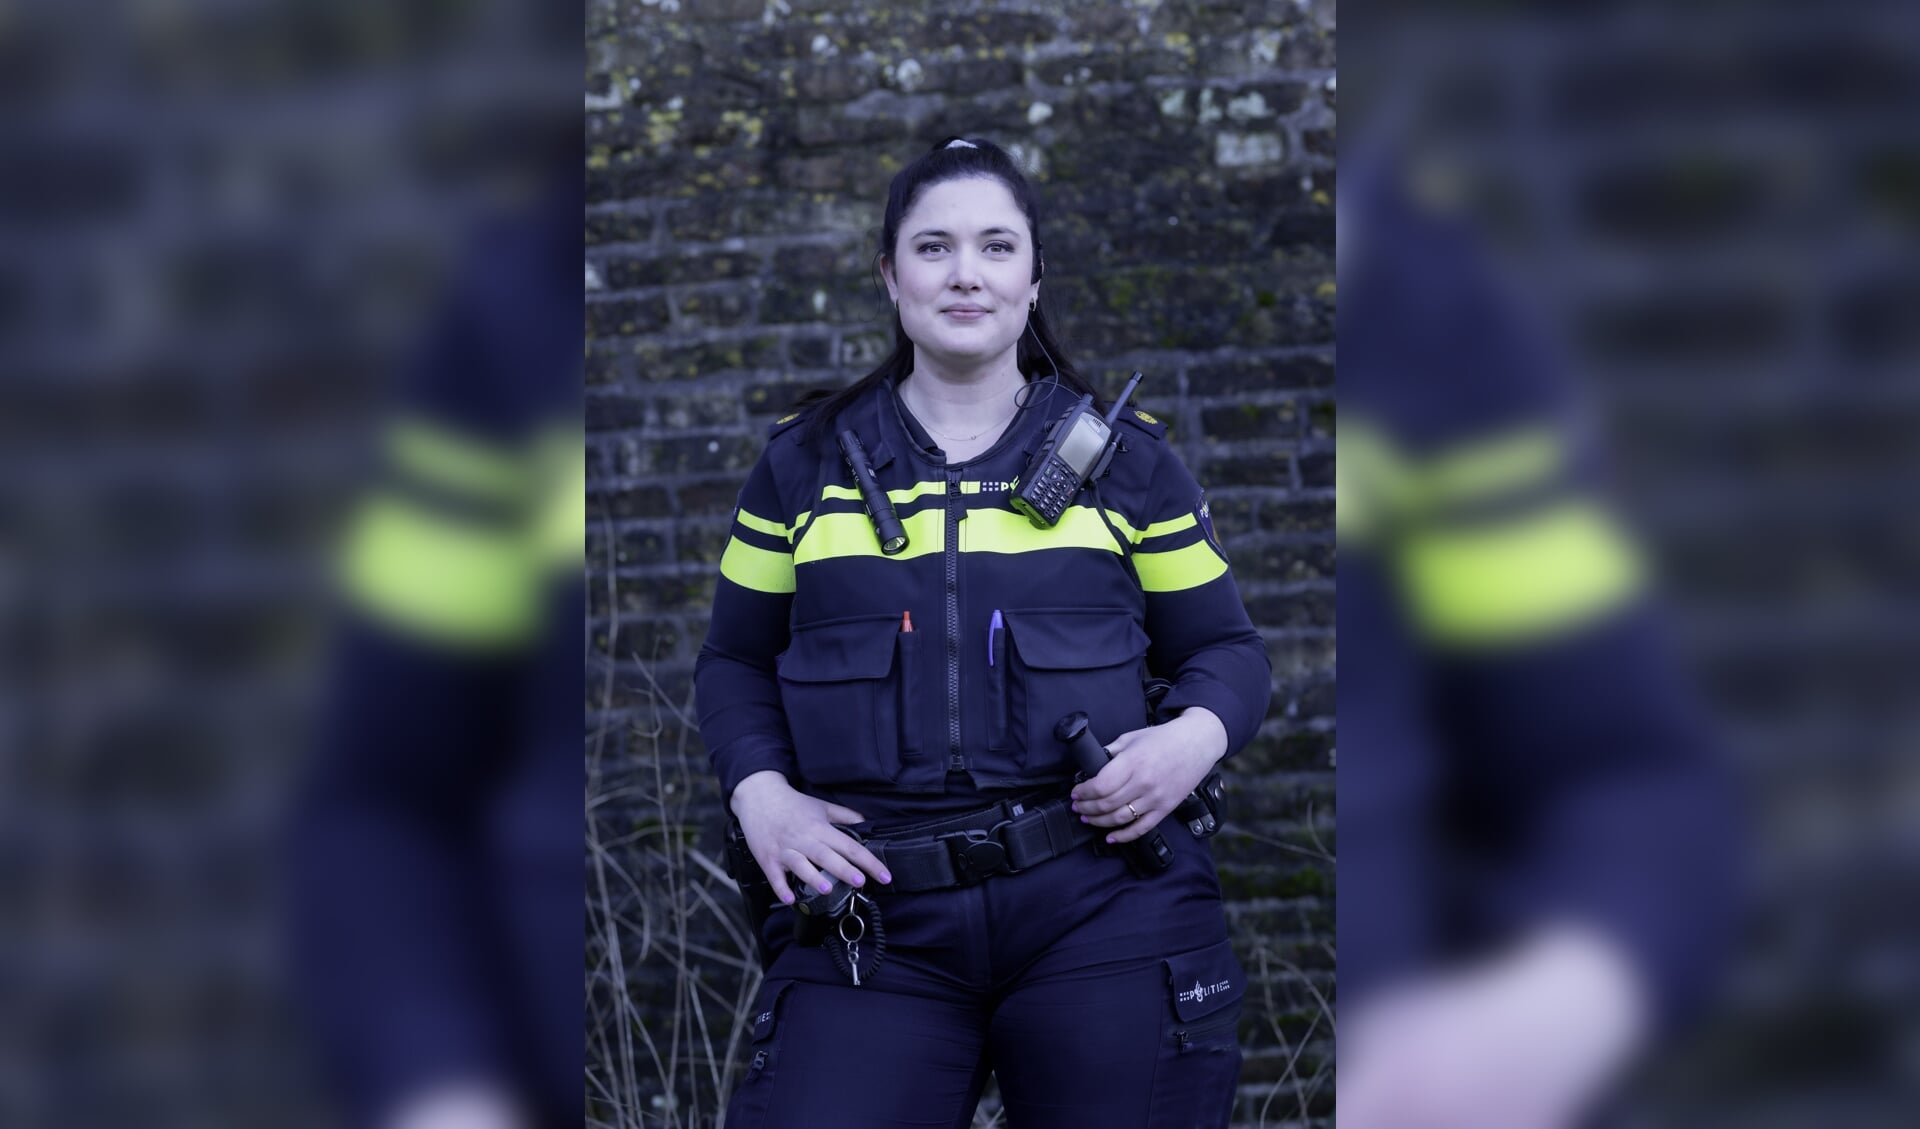 • Wijkagent in West Betuwe: Maaike Houterman.